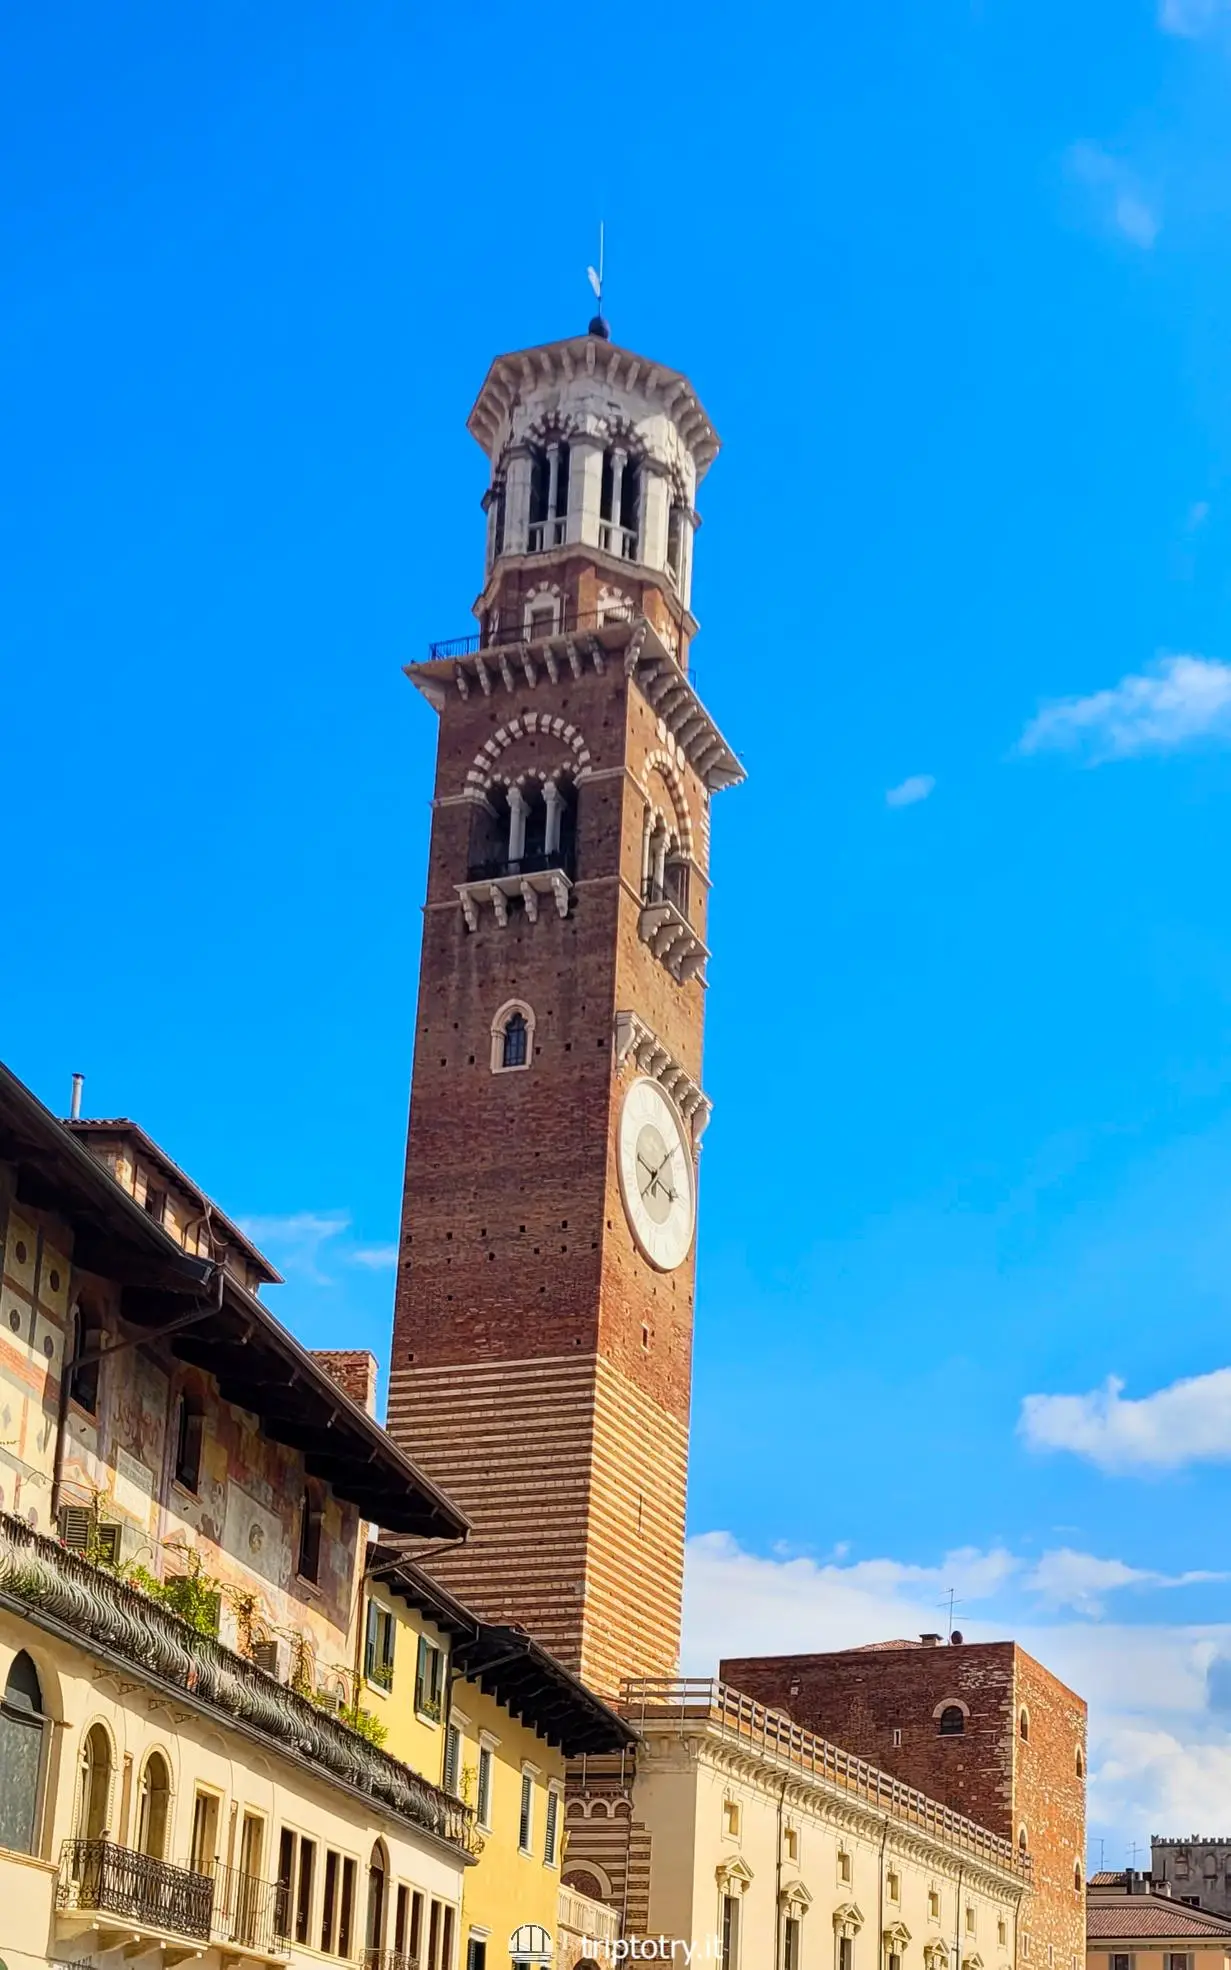 L'alta Torre dei Lamberti svetta su Piazza Bra nel centro storico di Verona - Verona what to see